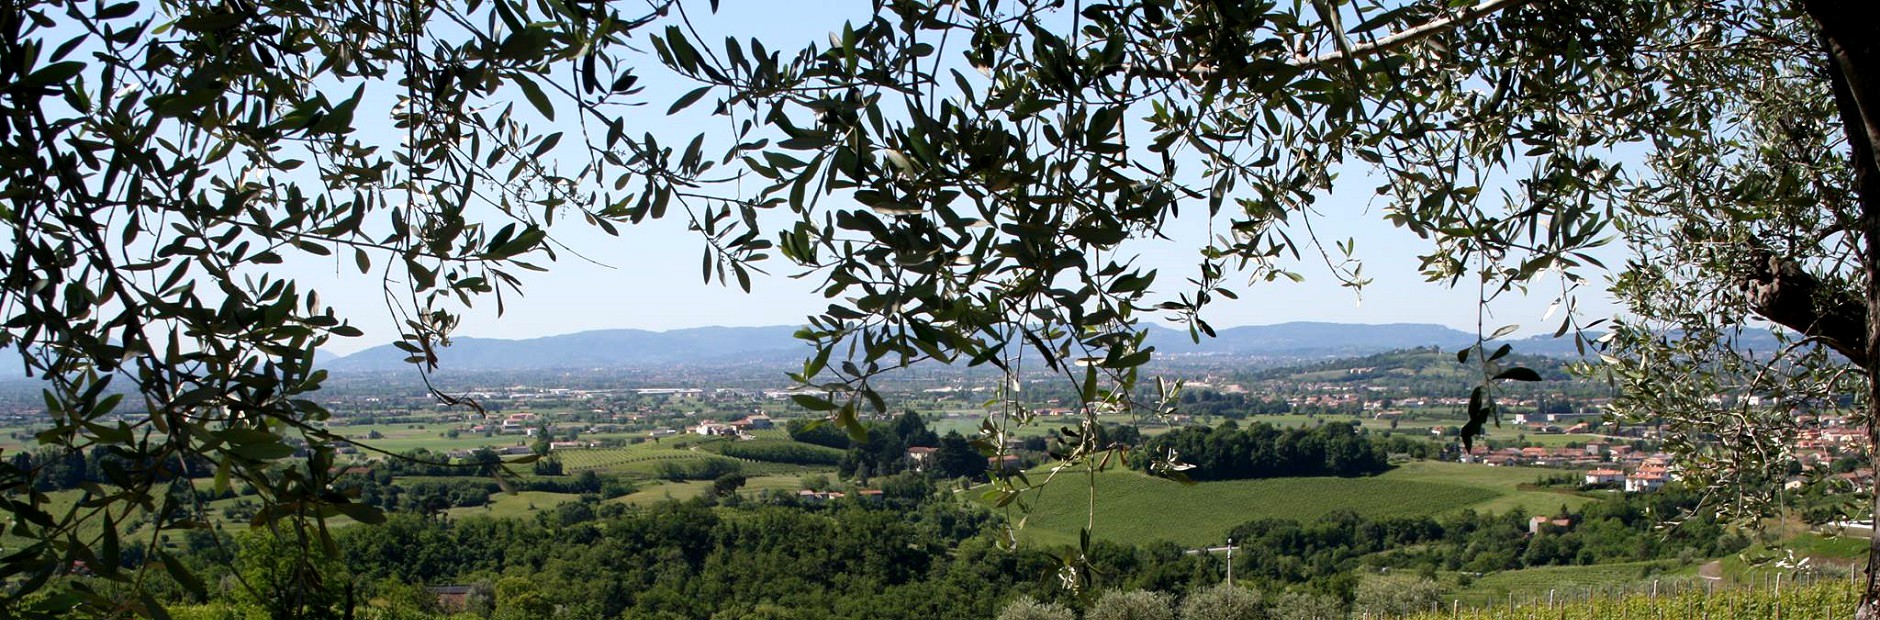 Panorama cantina vini Cà Biasi Breganze